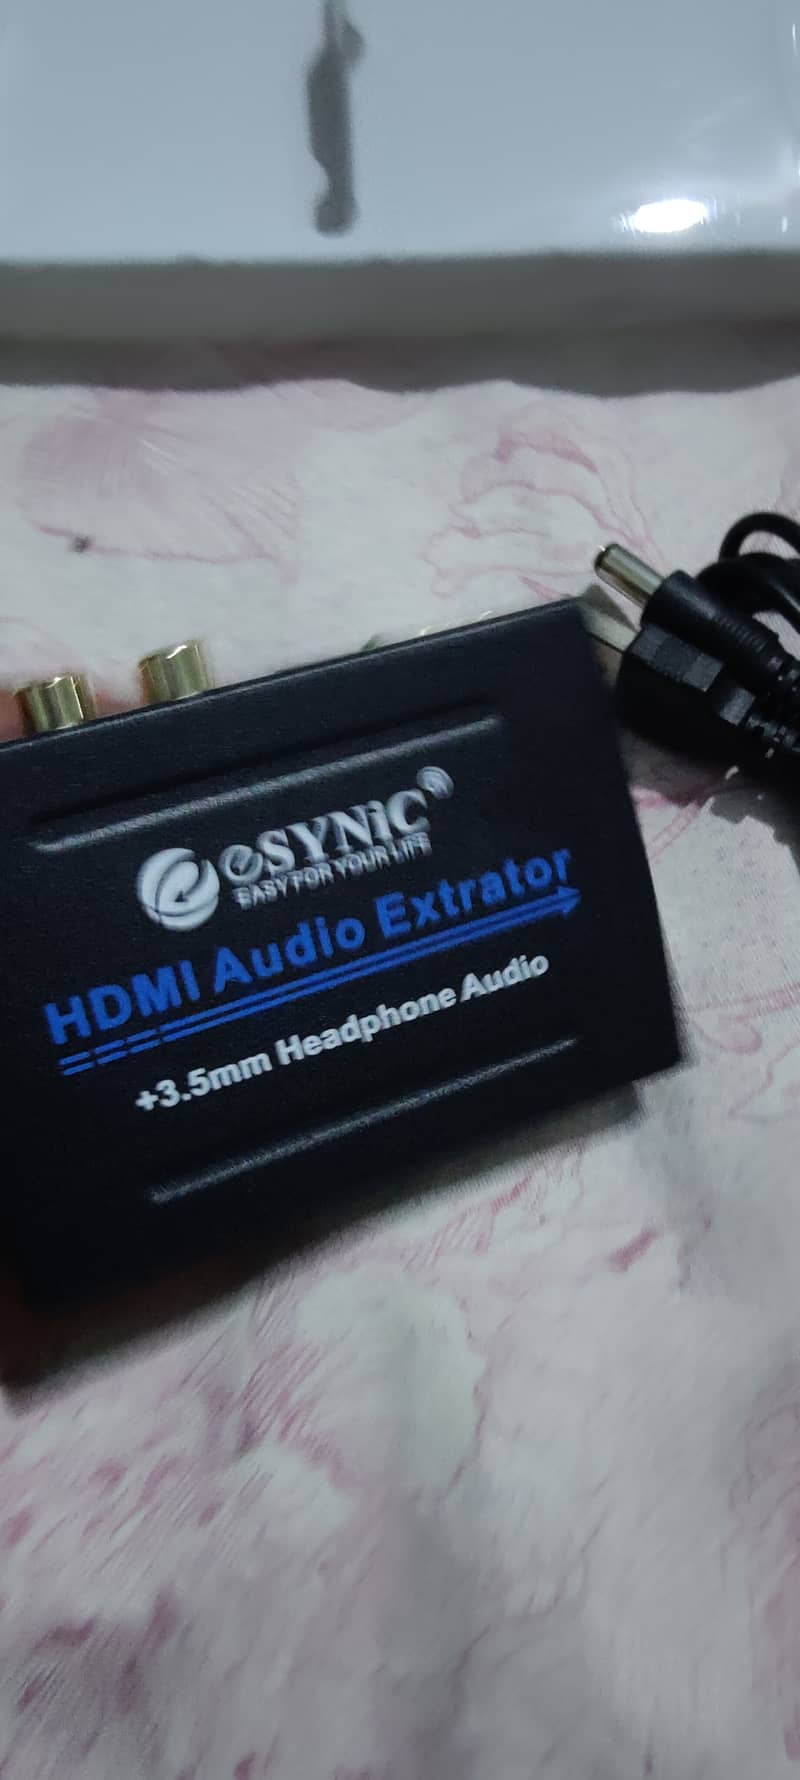 Esynic Audio Video Extrator +3.5 mm Headphone audio 3